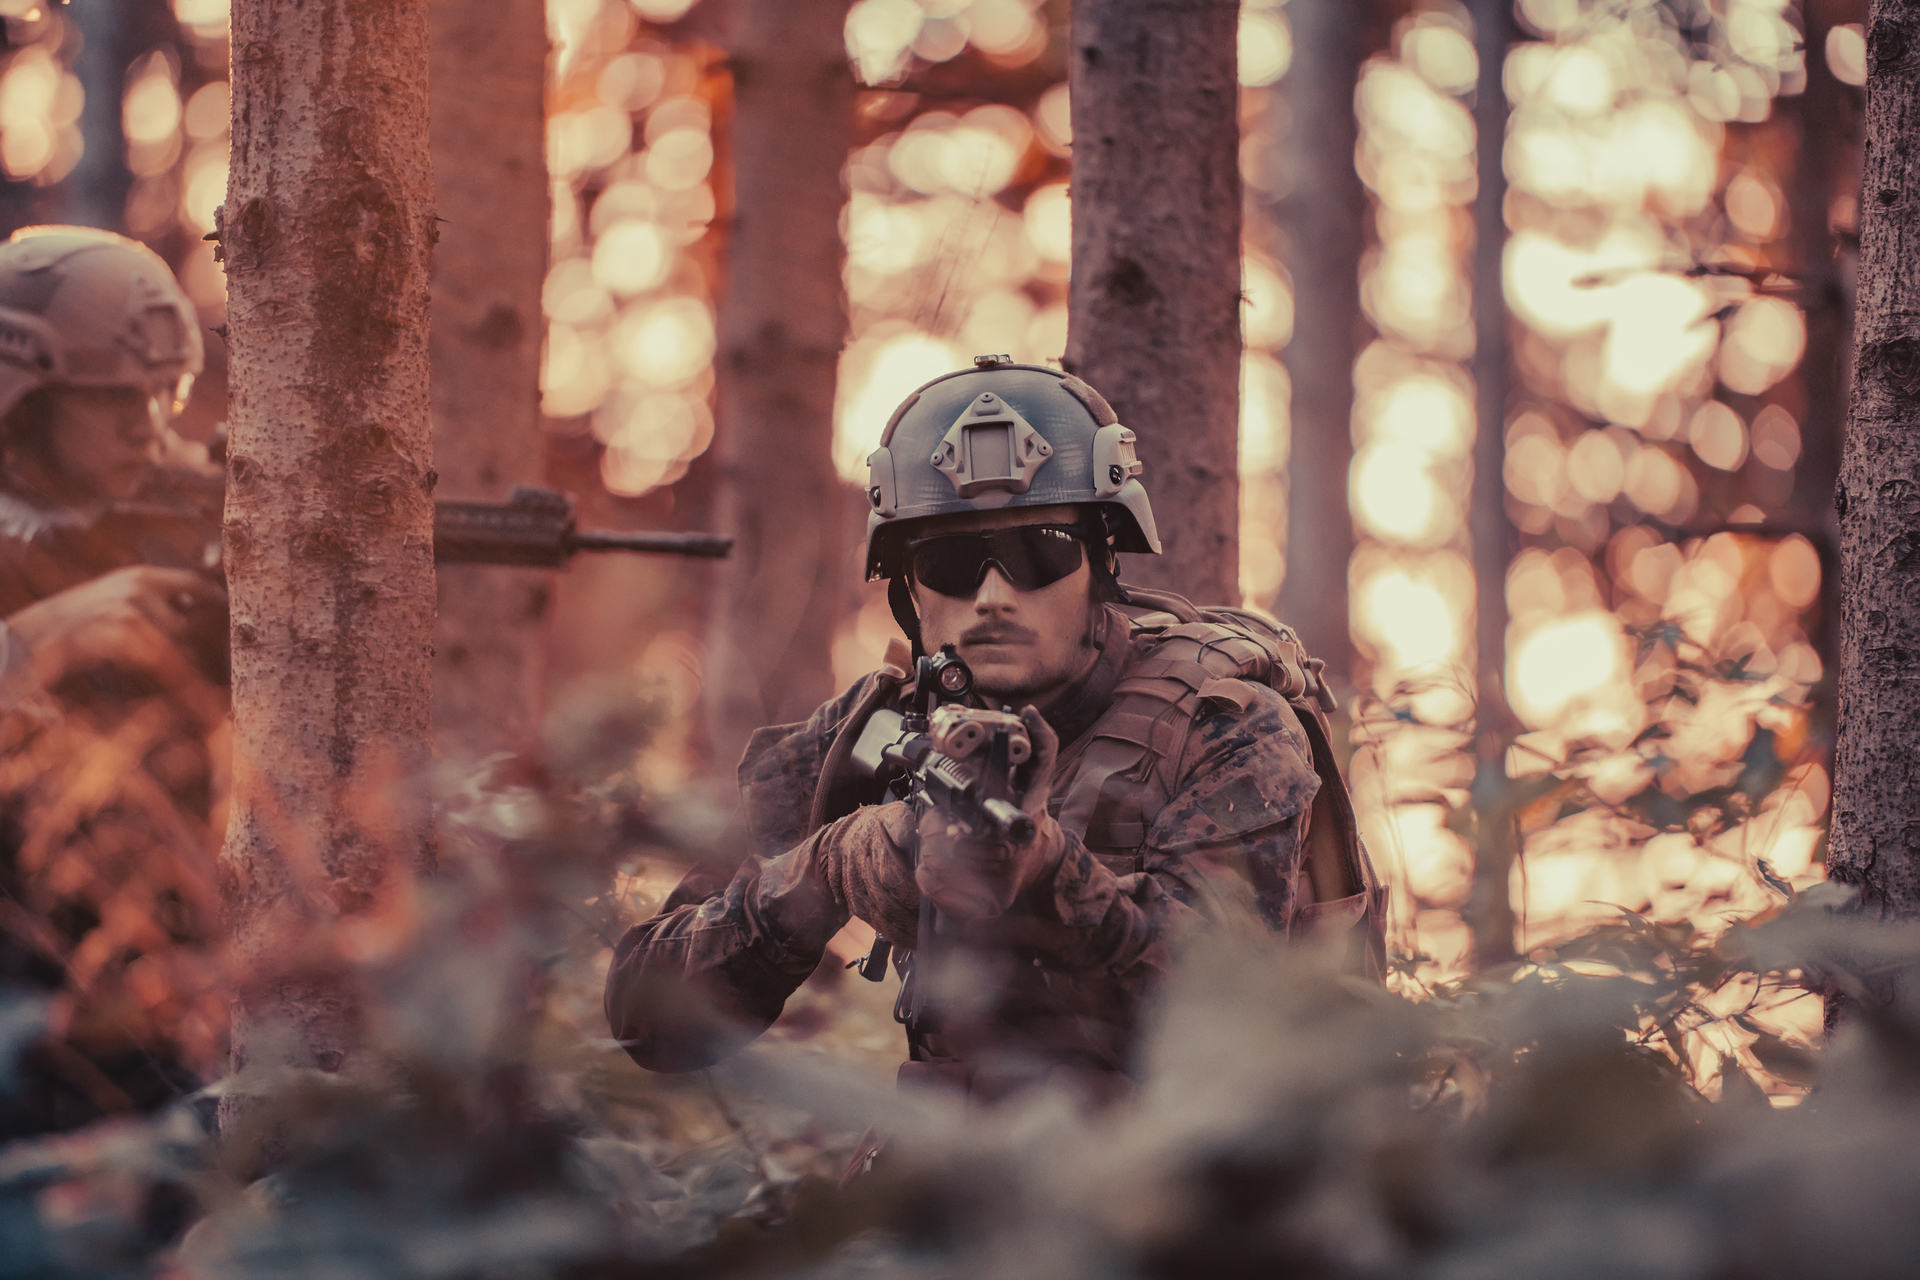 Niemiecki żołnierz w pełnym umundurowaniu, emanujący profesjonalizmem i odwagą, podczas akcji z karabinem w lesie